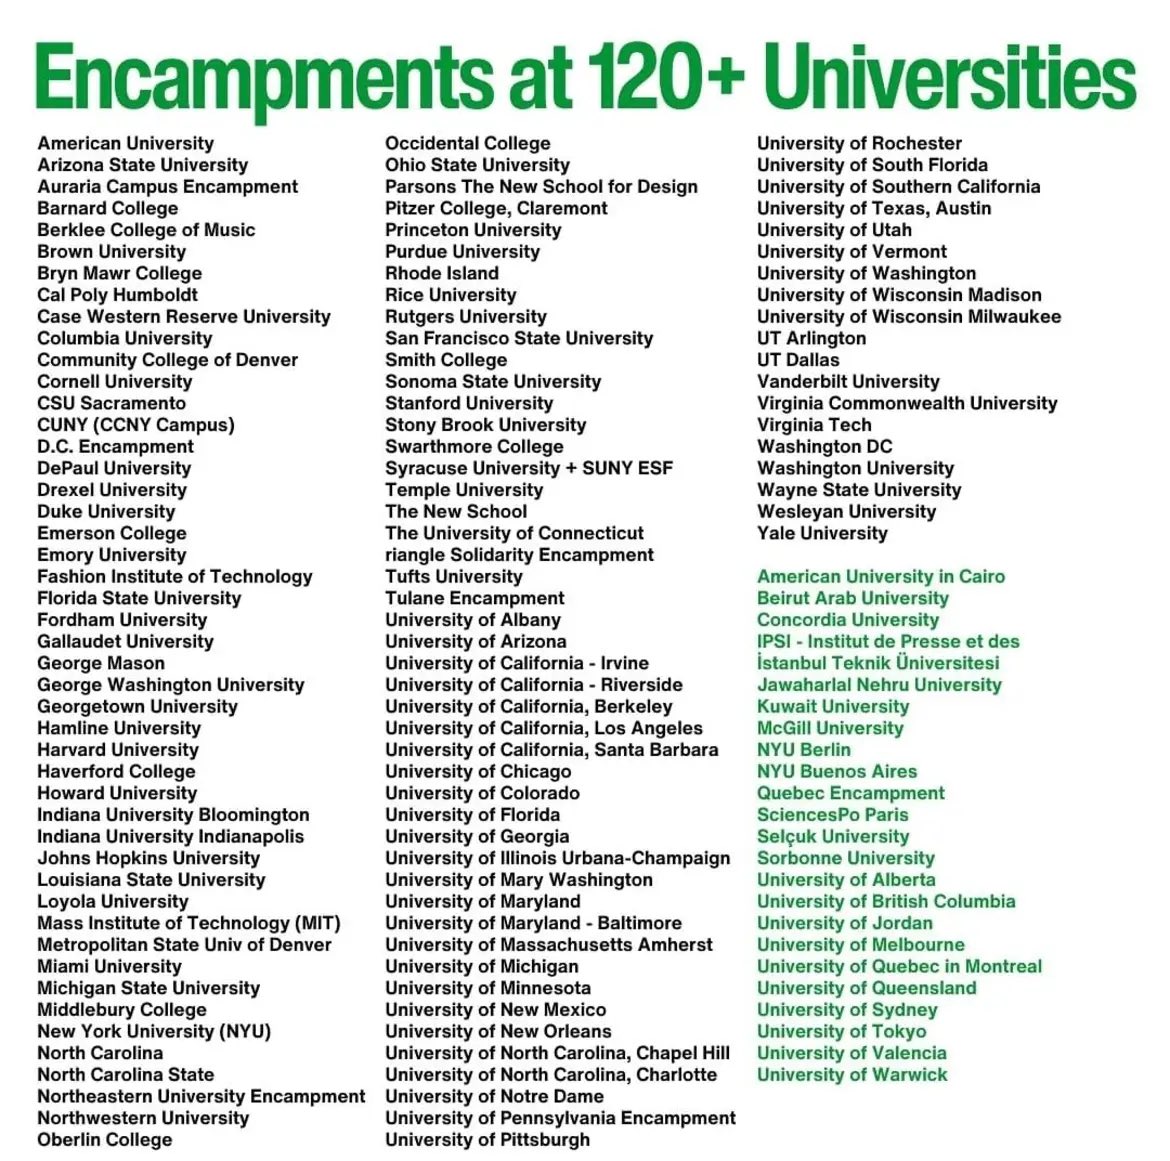 Today’s list of universities